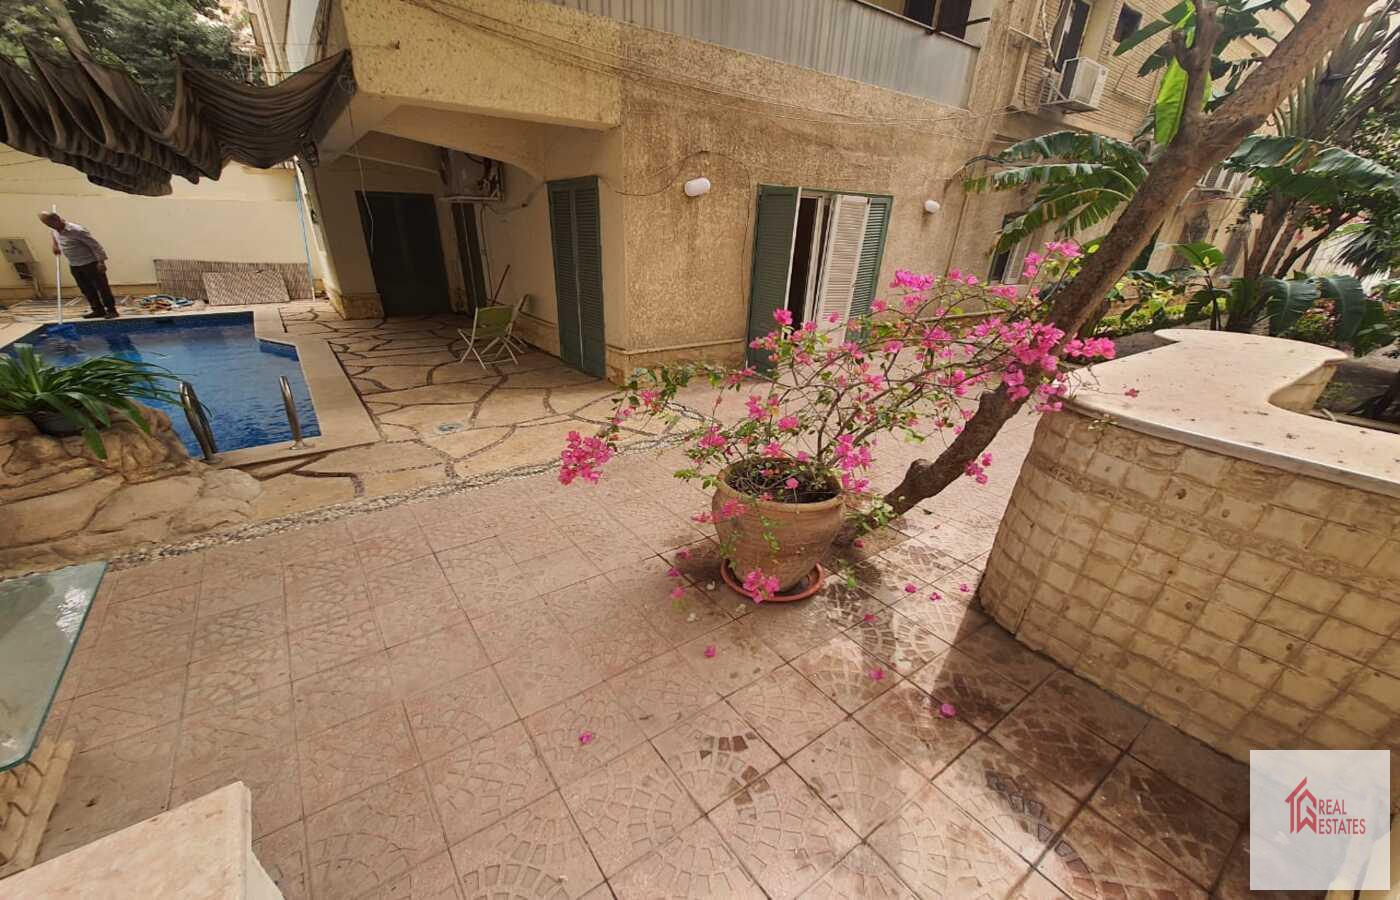 Piano terra con piscina privata in affitto a Sarayat El Maadi - Cairo - Egitto